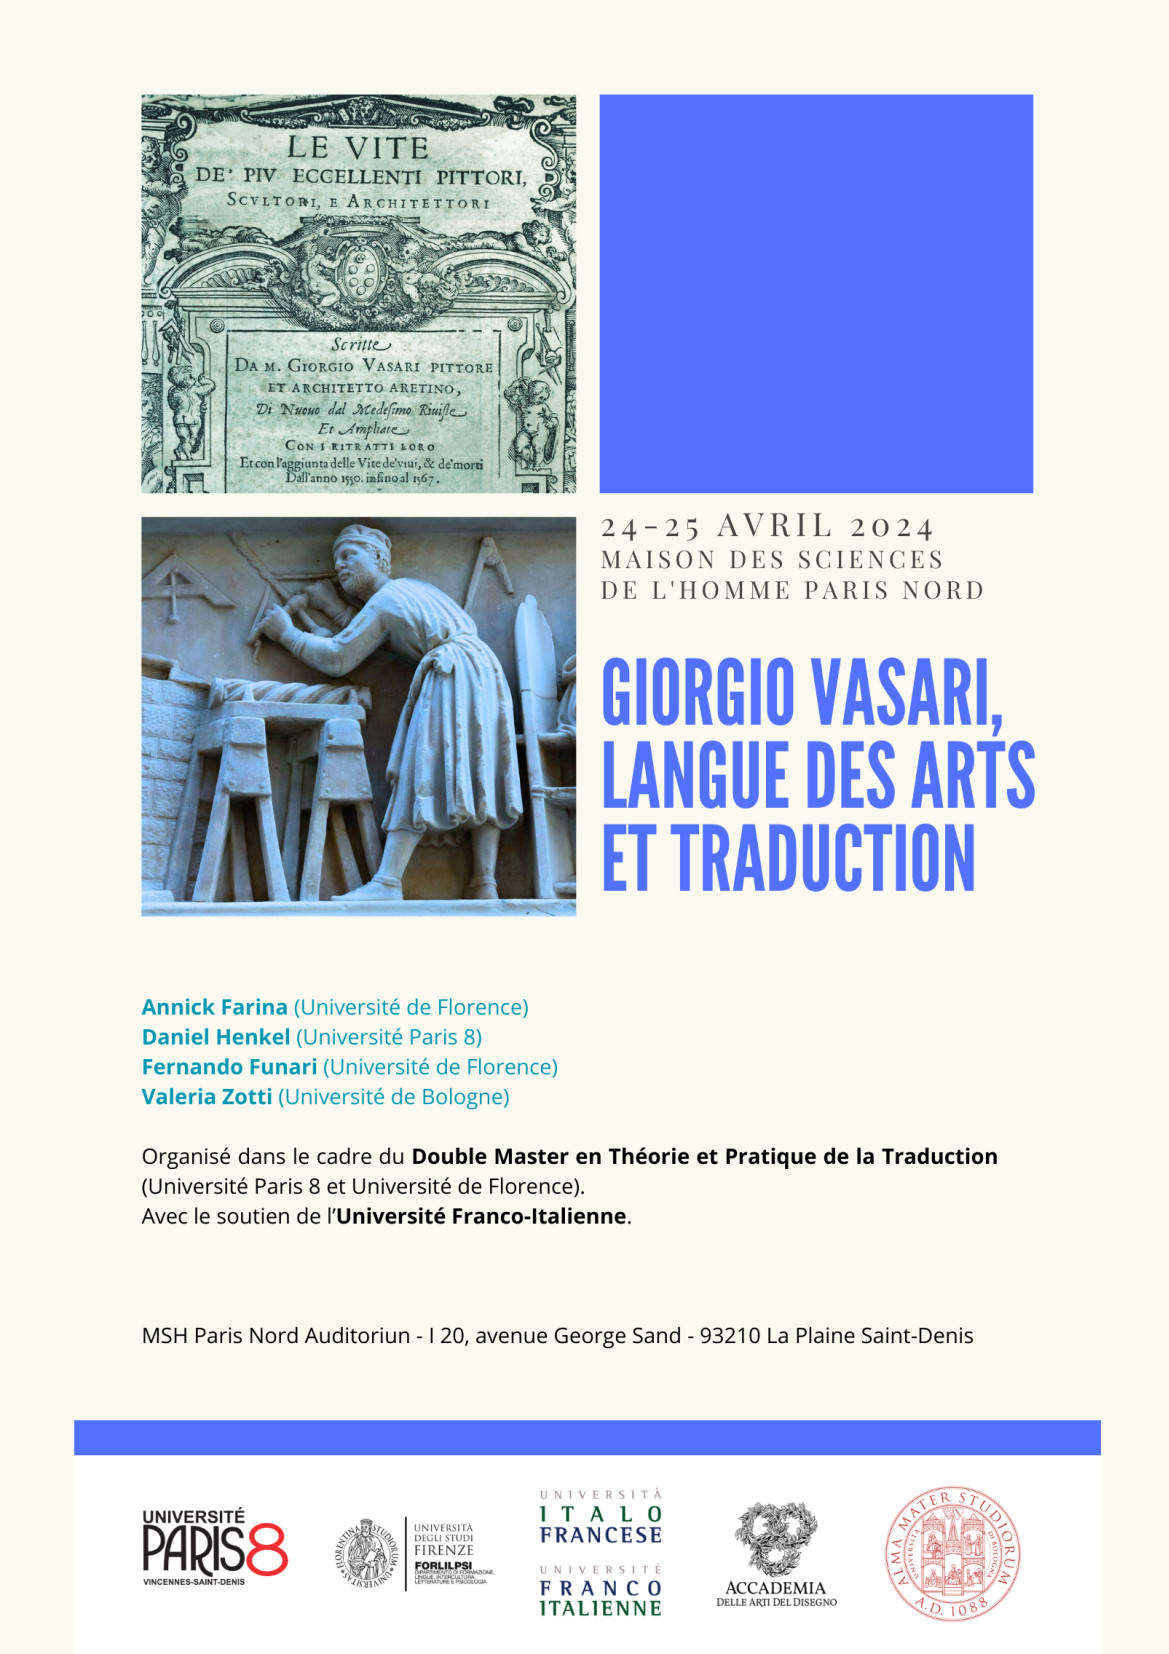 "Giorgio Vasari, langue des artes et traduction"